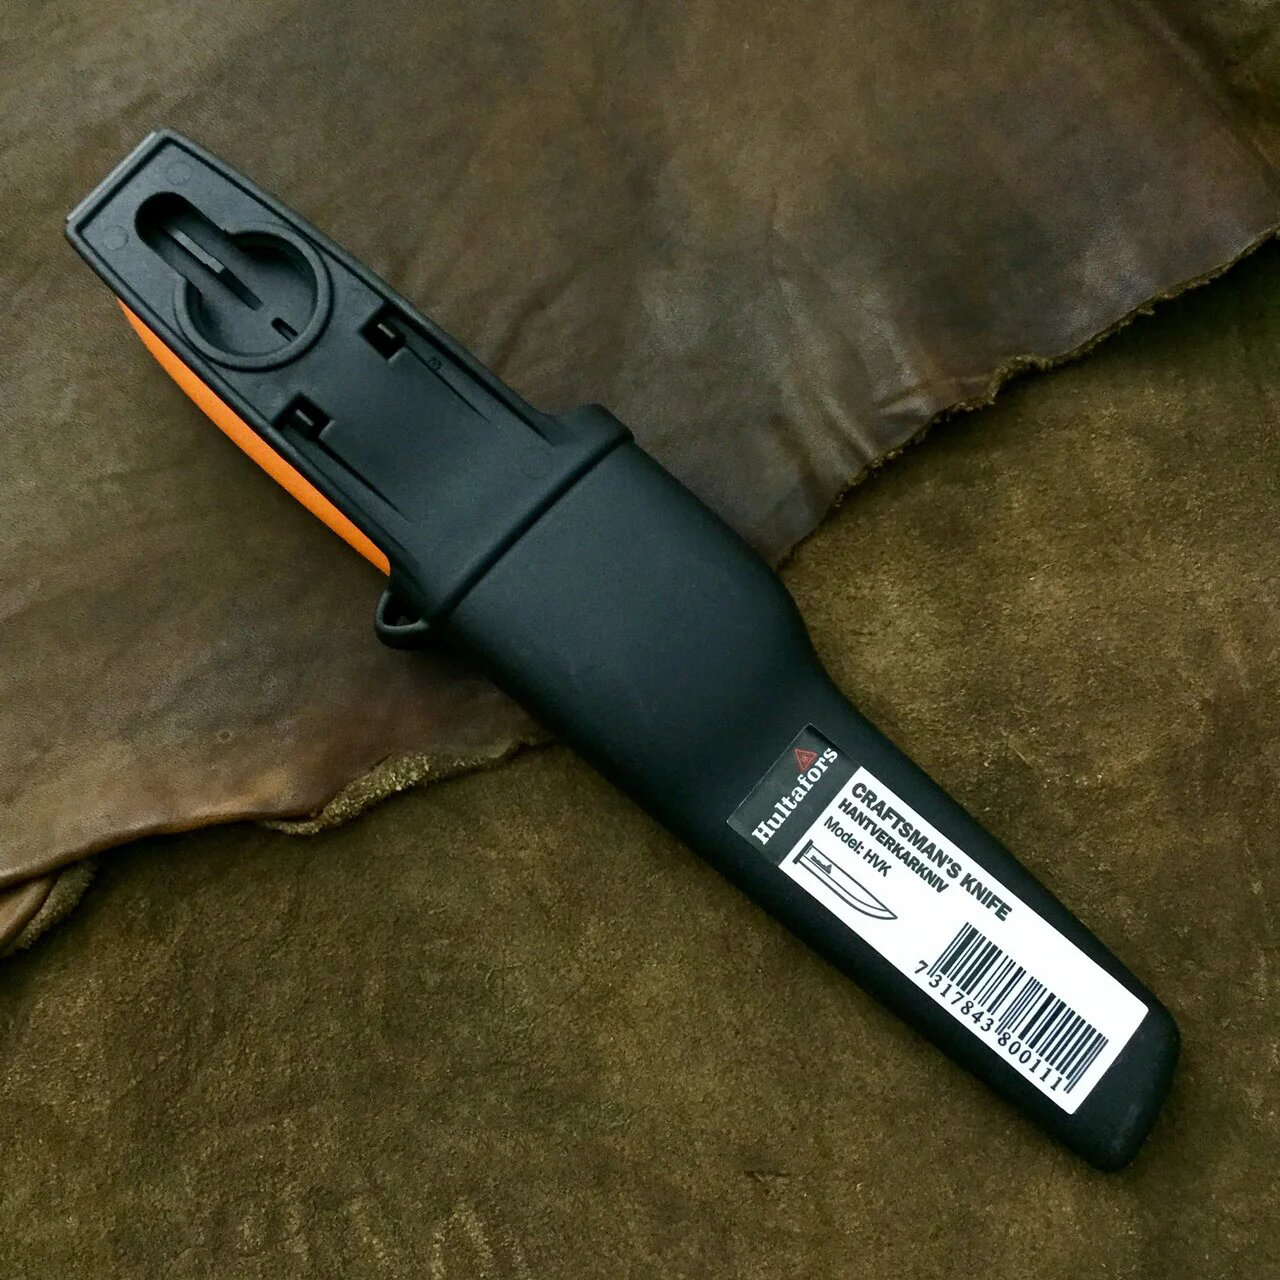 фото Нож строительный hultafors hvk, сталь углеродистая, рукоять полипропилен, оранжевый